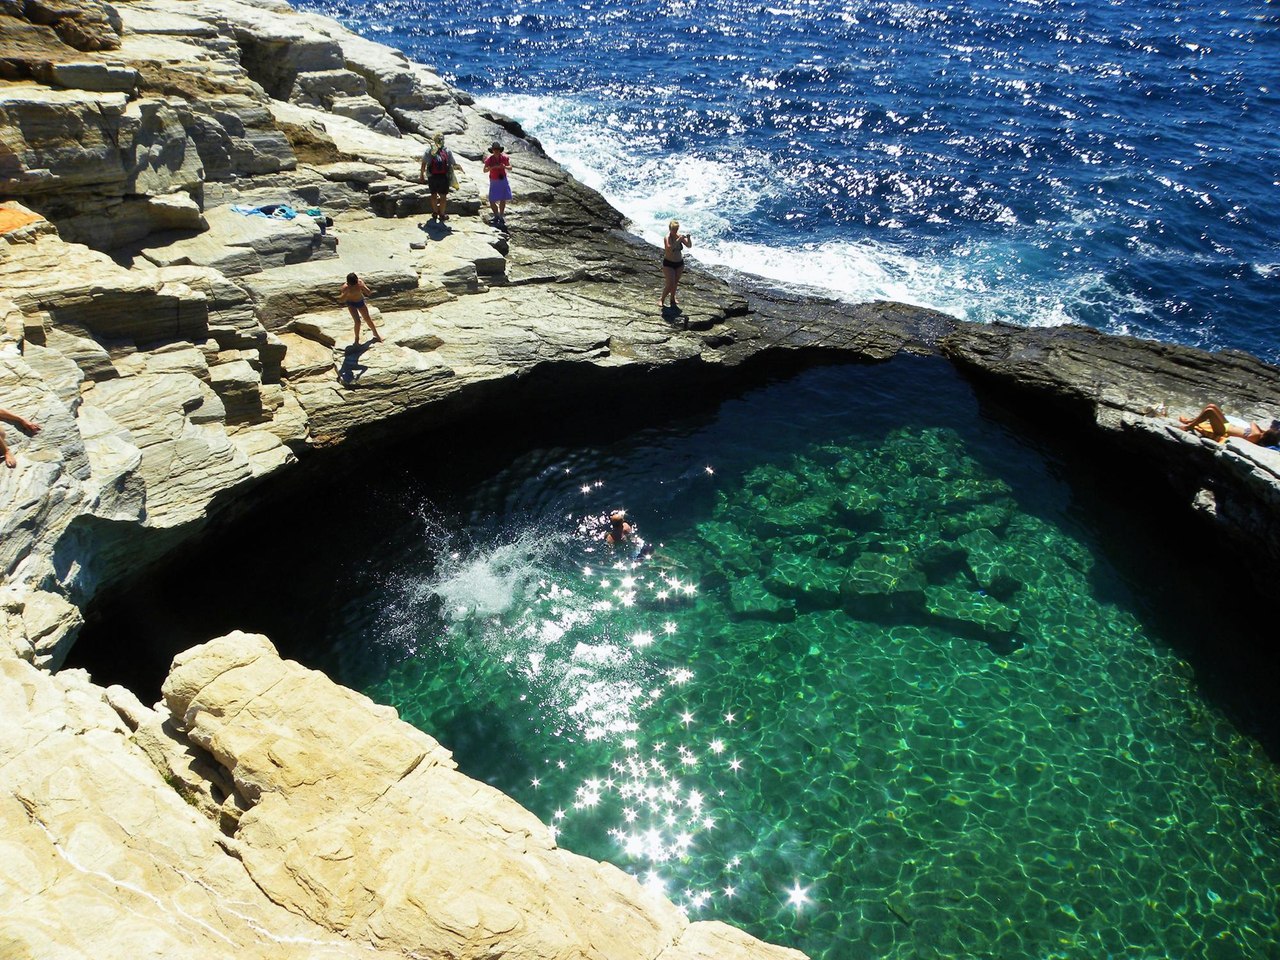 Кристально чистый природный бассейн в Греции